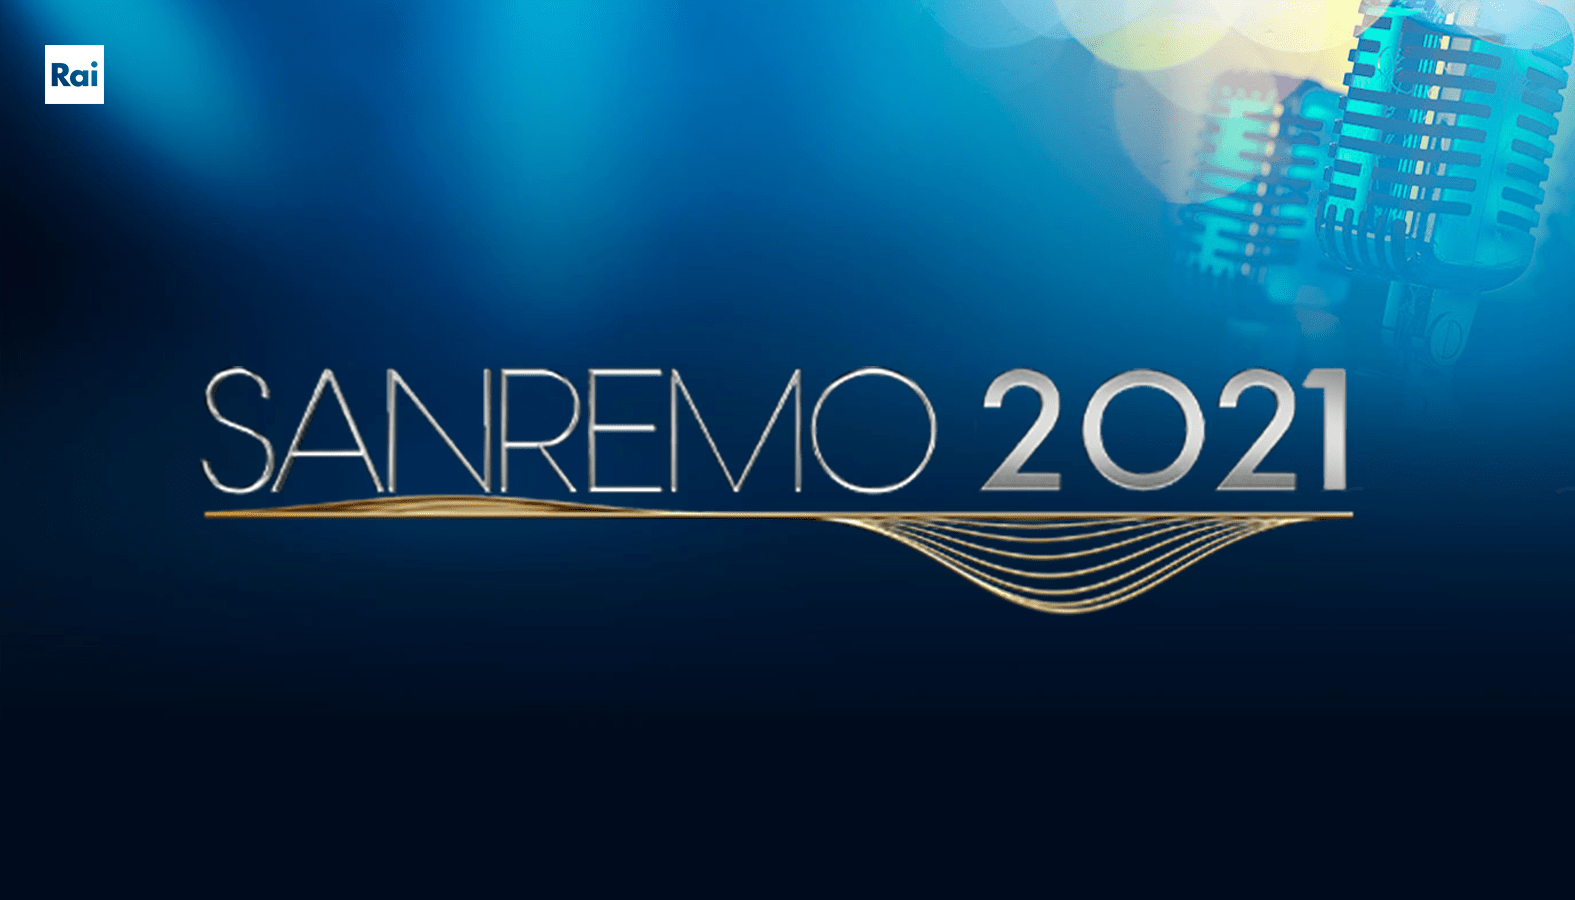 Festival di San Remo 2021 – quote scommesse